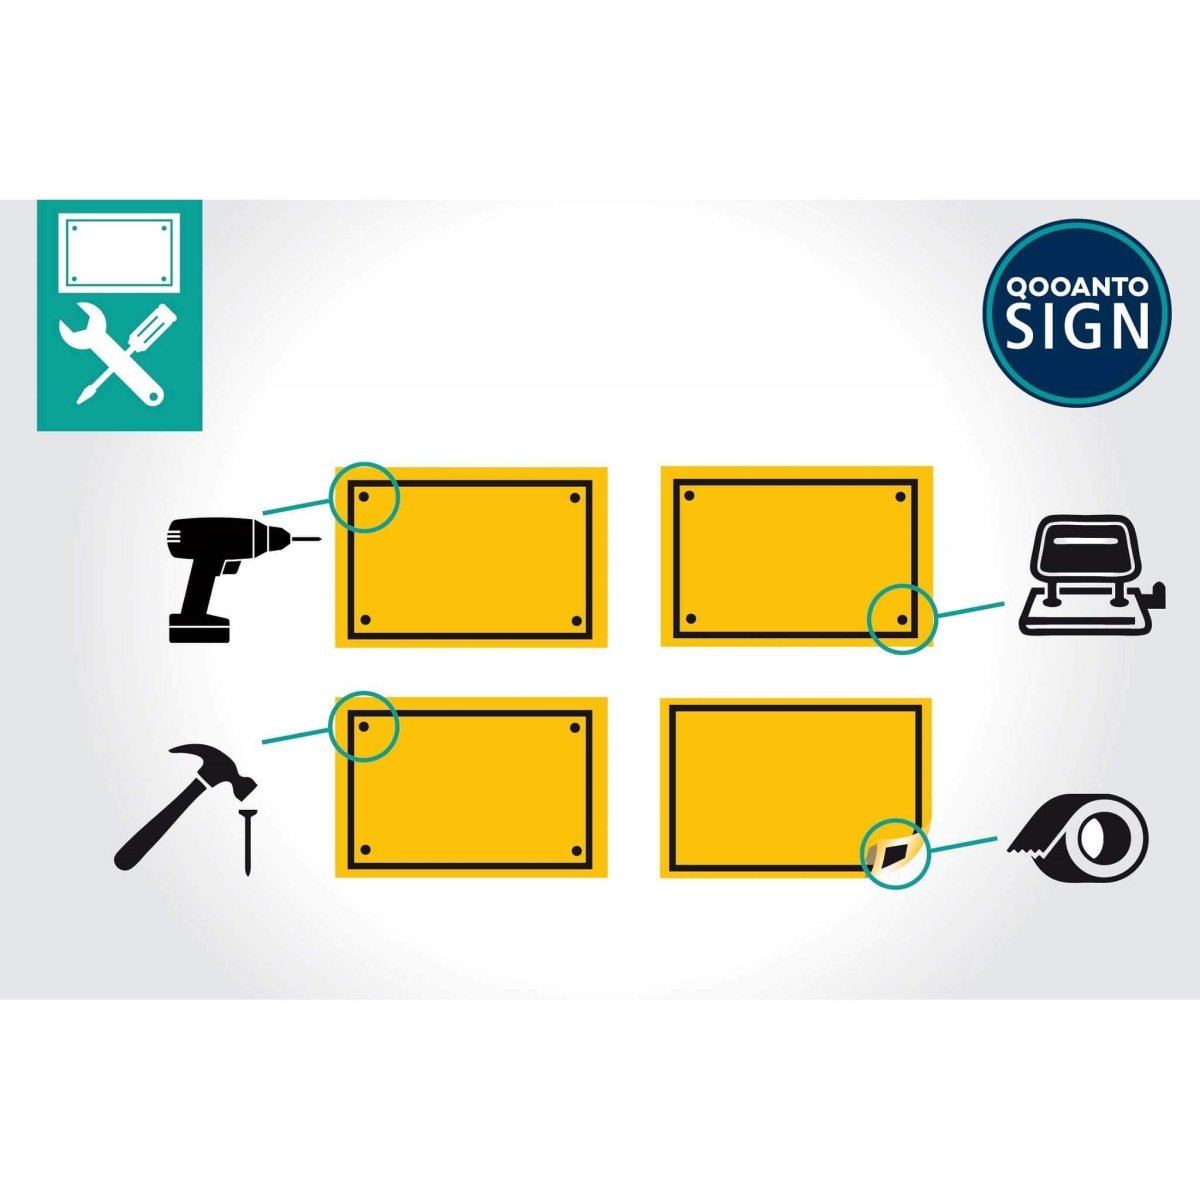 Parkplatz Nur Für Räum- Und Streufahrzeuge Schild aus Alu-Verbund mit UV-Schutz - QOOANTO-SIGN